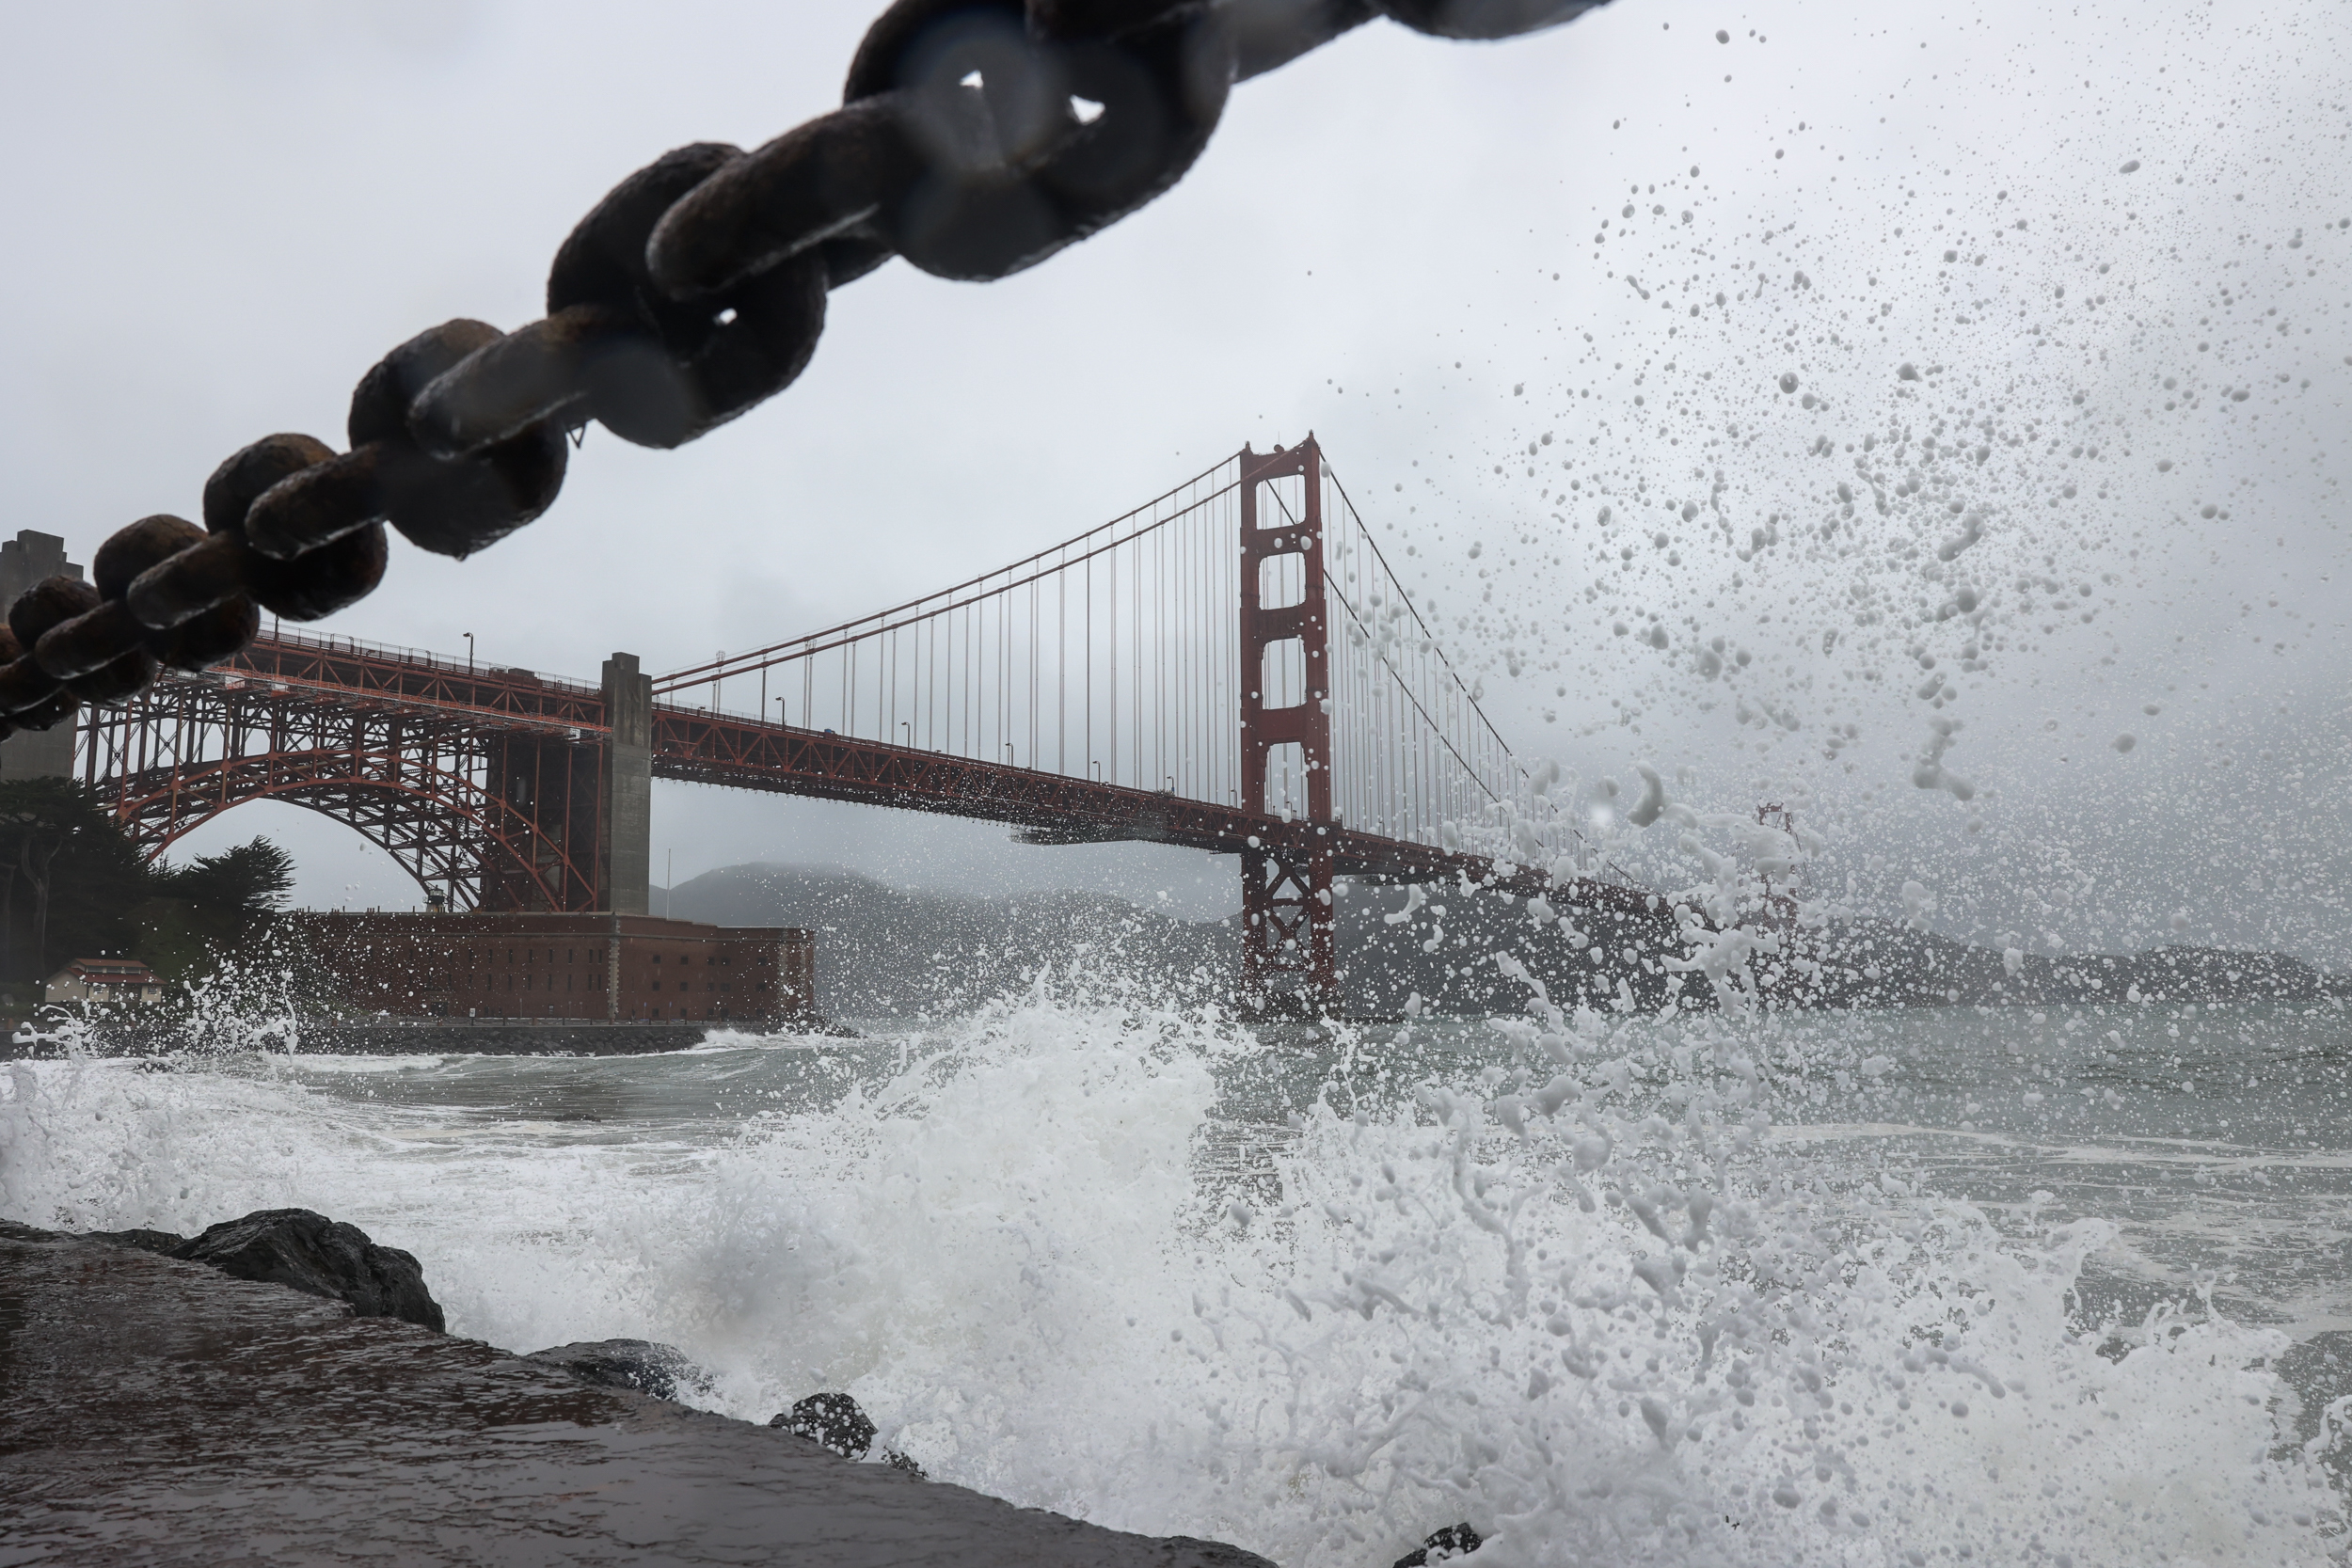 Golden Gate Bridge's Suicide Net Is Finally Complete